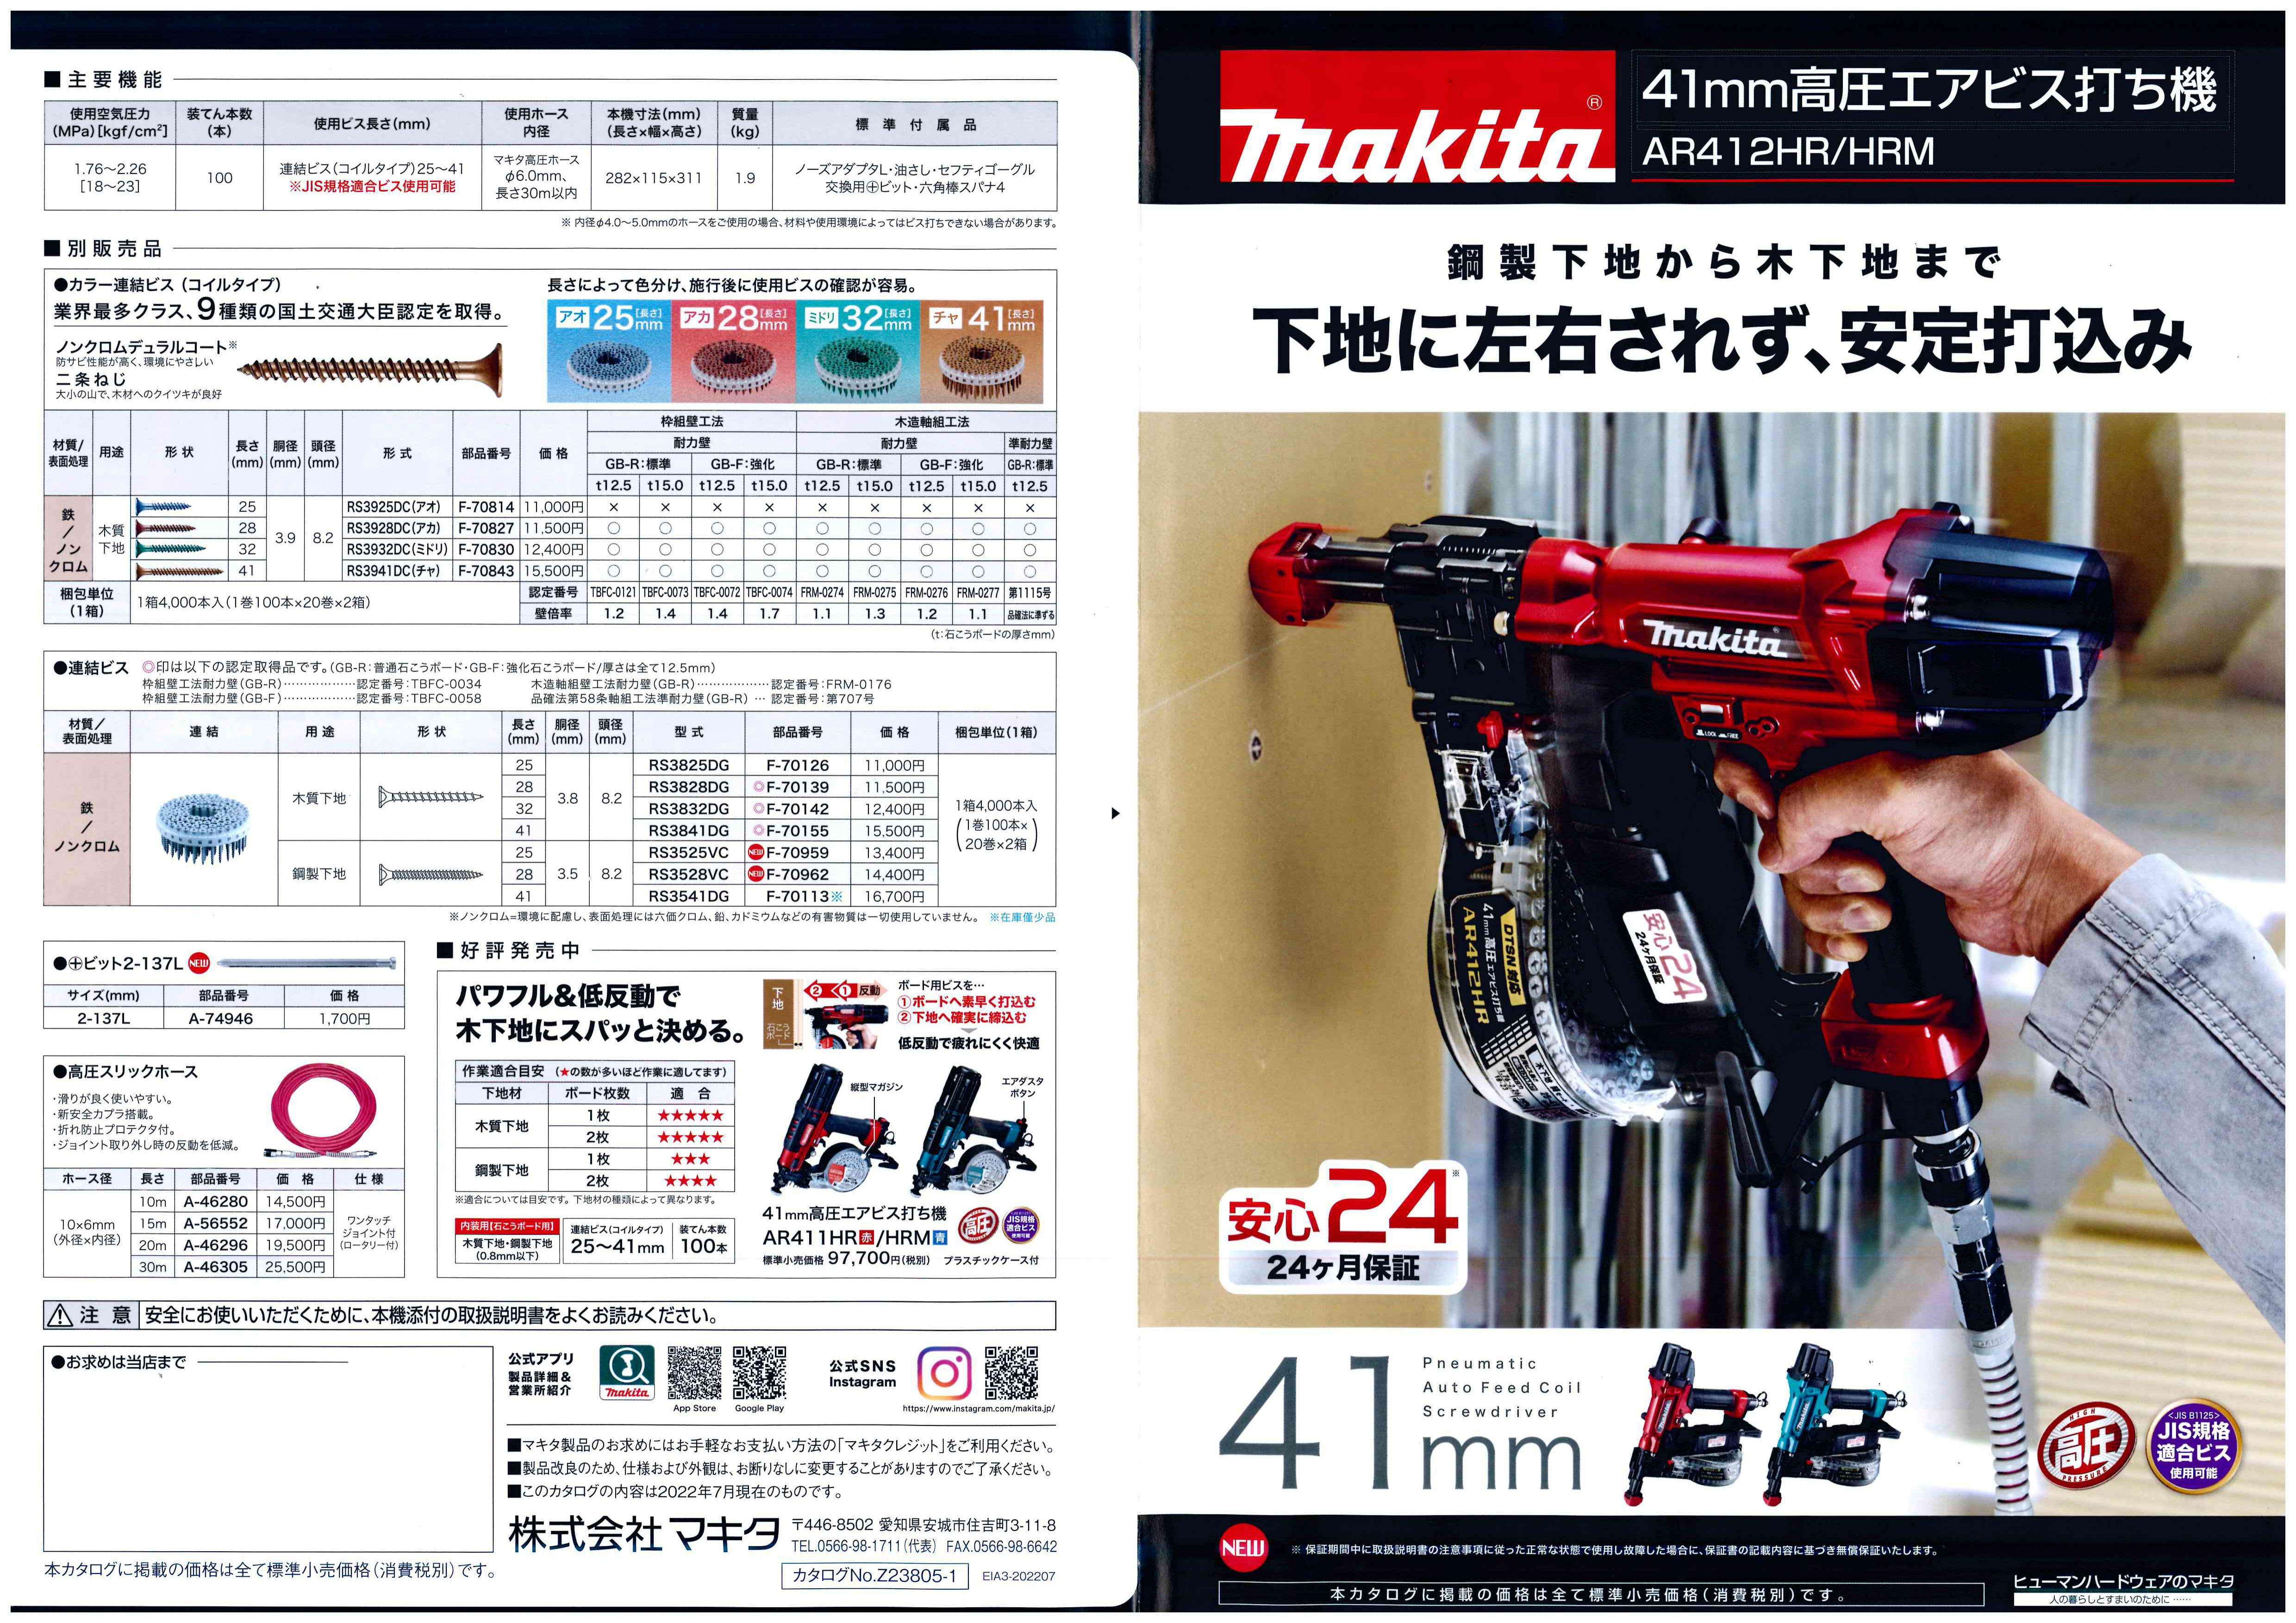 初売り】 マキタ makita 41mm高圧エアビス打ち機 AR412HRM 1台